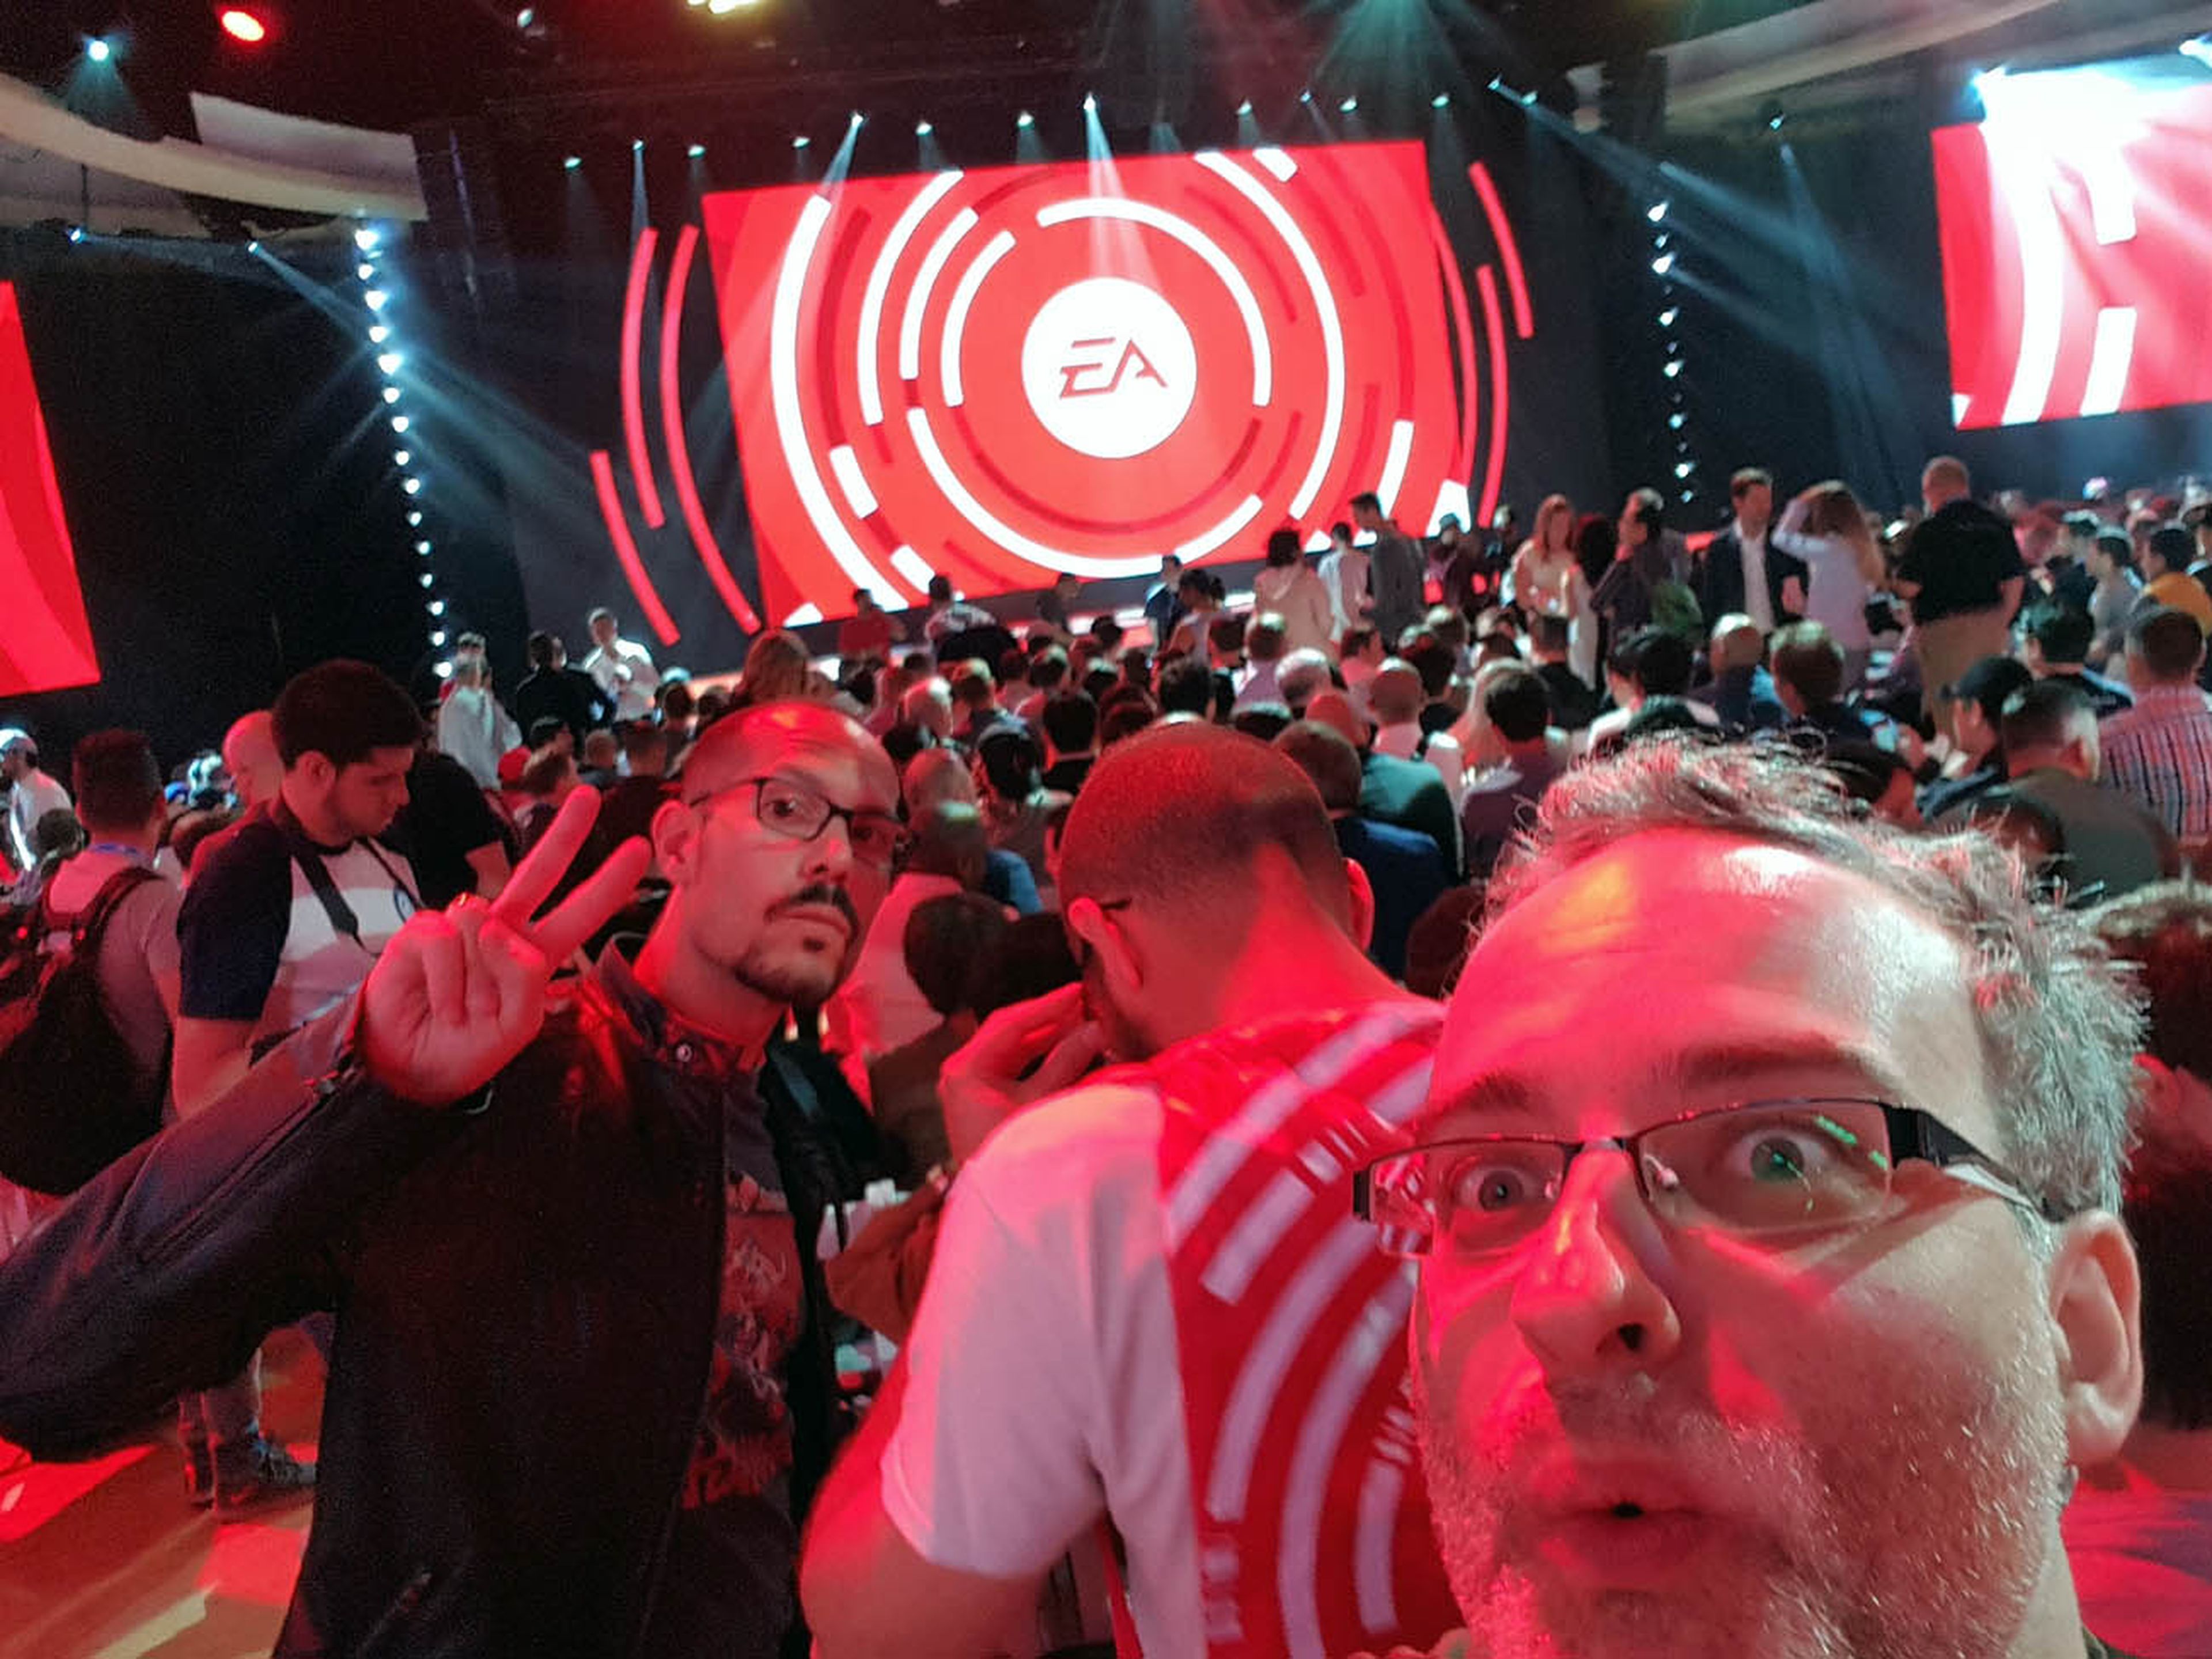 Conferencia EA E3 2017 - Dani y David